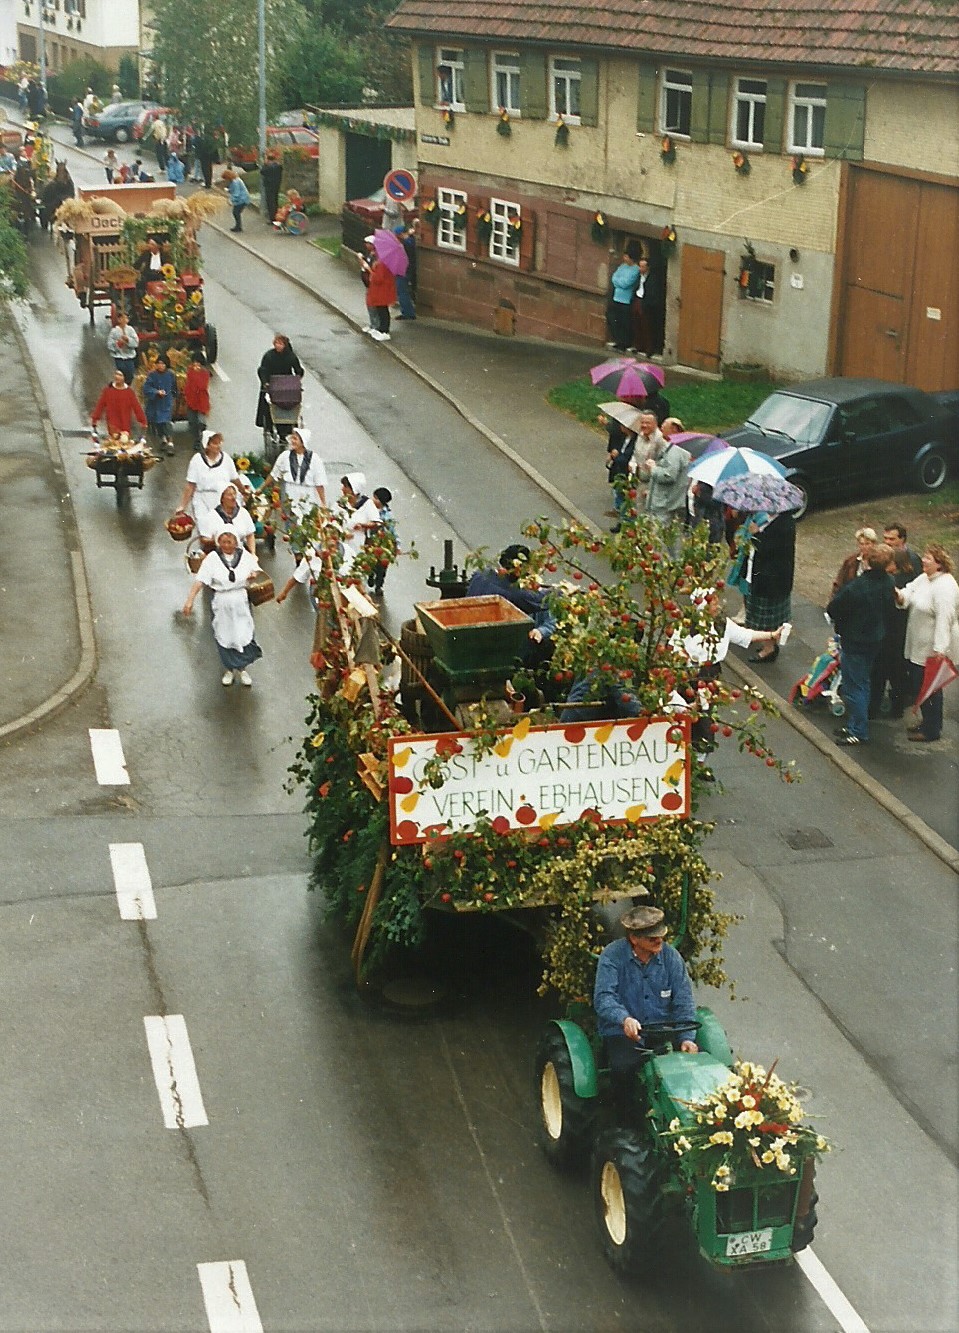 Festwagen vom Obst u Gartenbauverein beim Festzug zu 750 Jahre Wöllhausen 1995 (1) - Foto: Forum Ebhausen